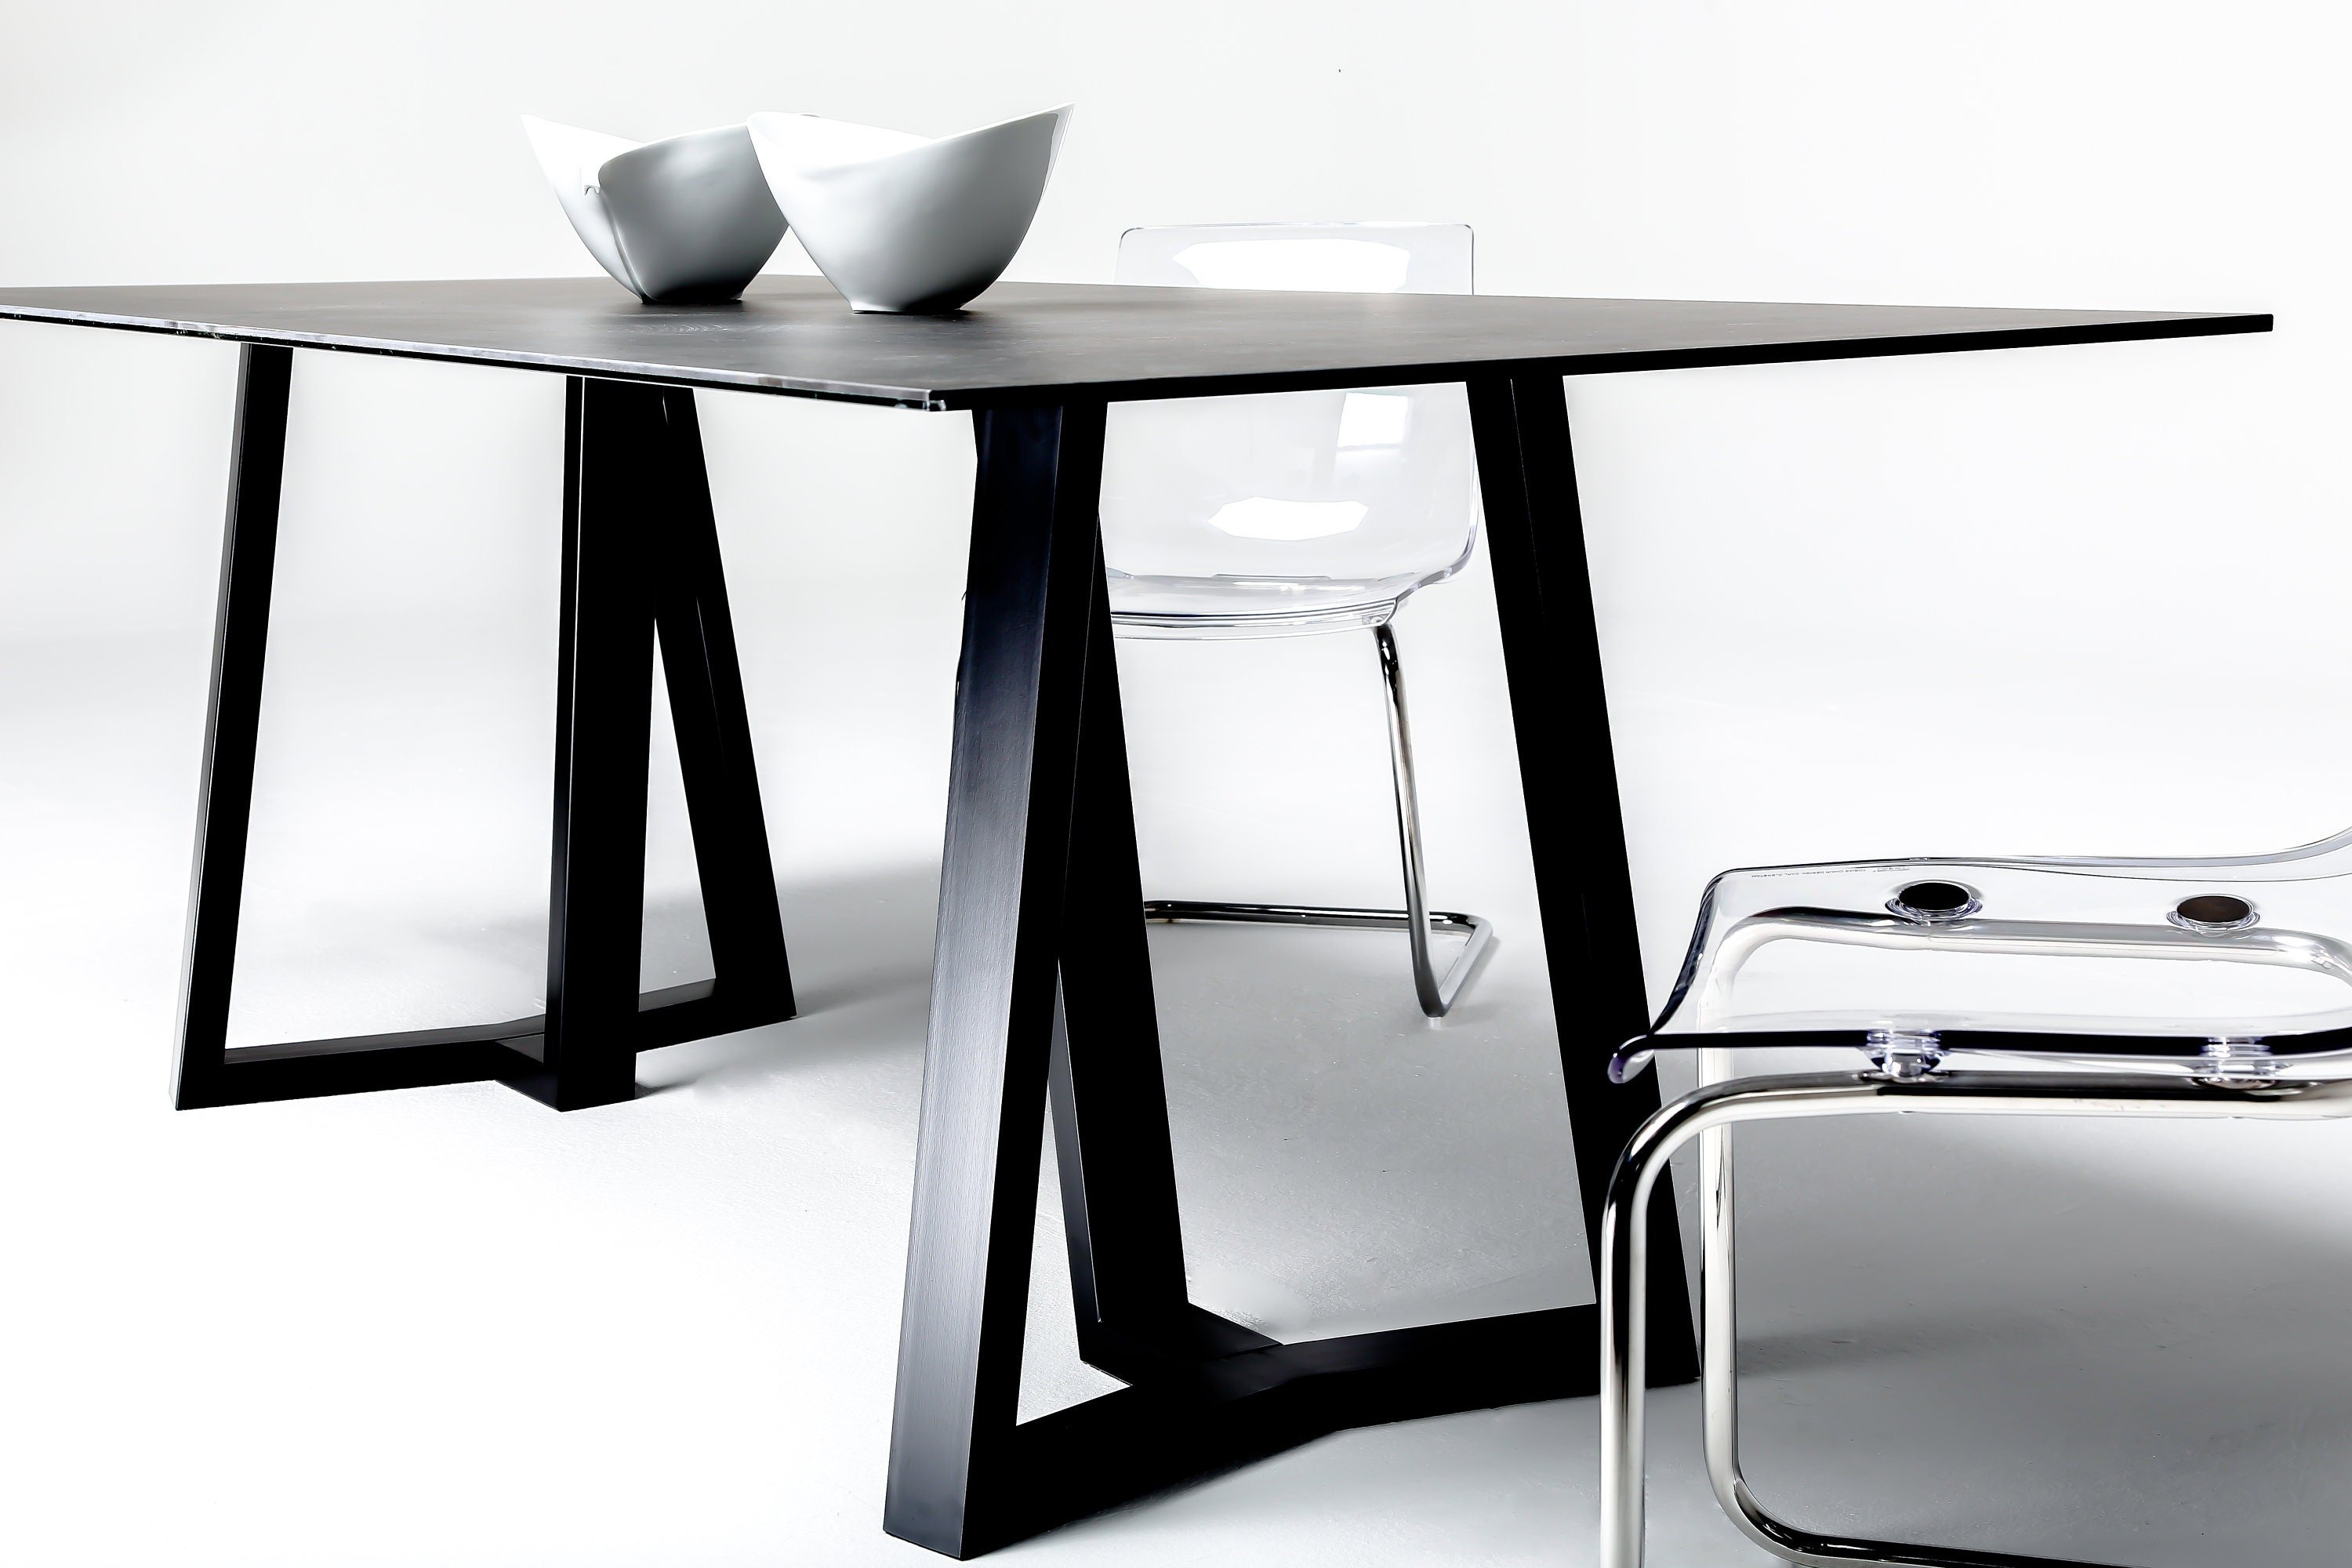 Стол обеденный металл. Обеденный стол silhouette Pedestal Dining Table. Подстолье металлическое для обеденного стола. Дизайнерские столы из металла. Подстолье для обеденного стола из металла.